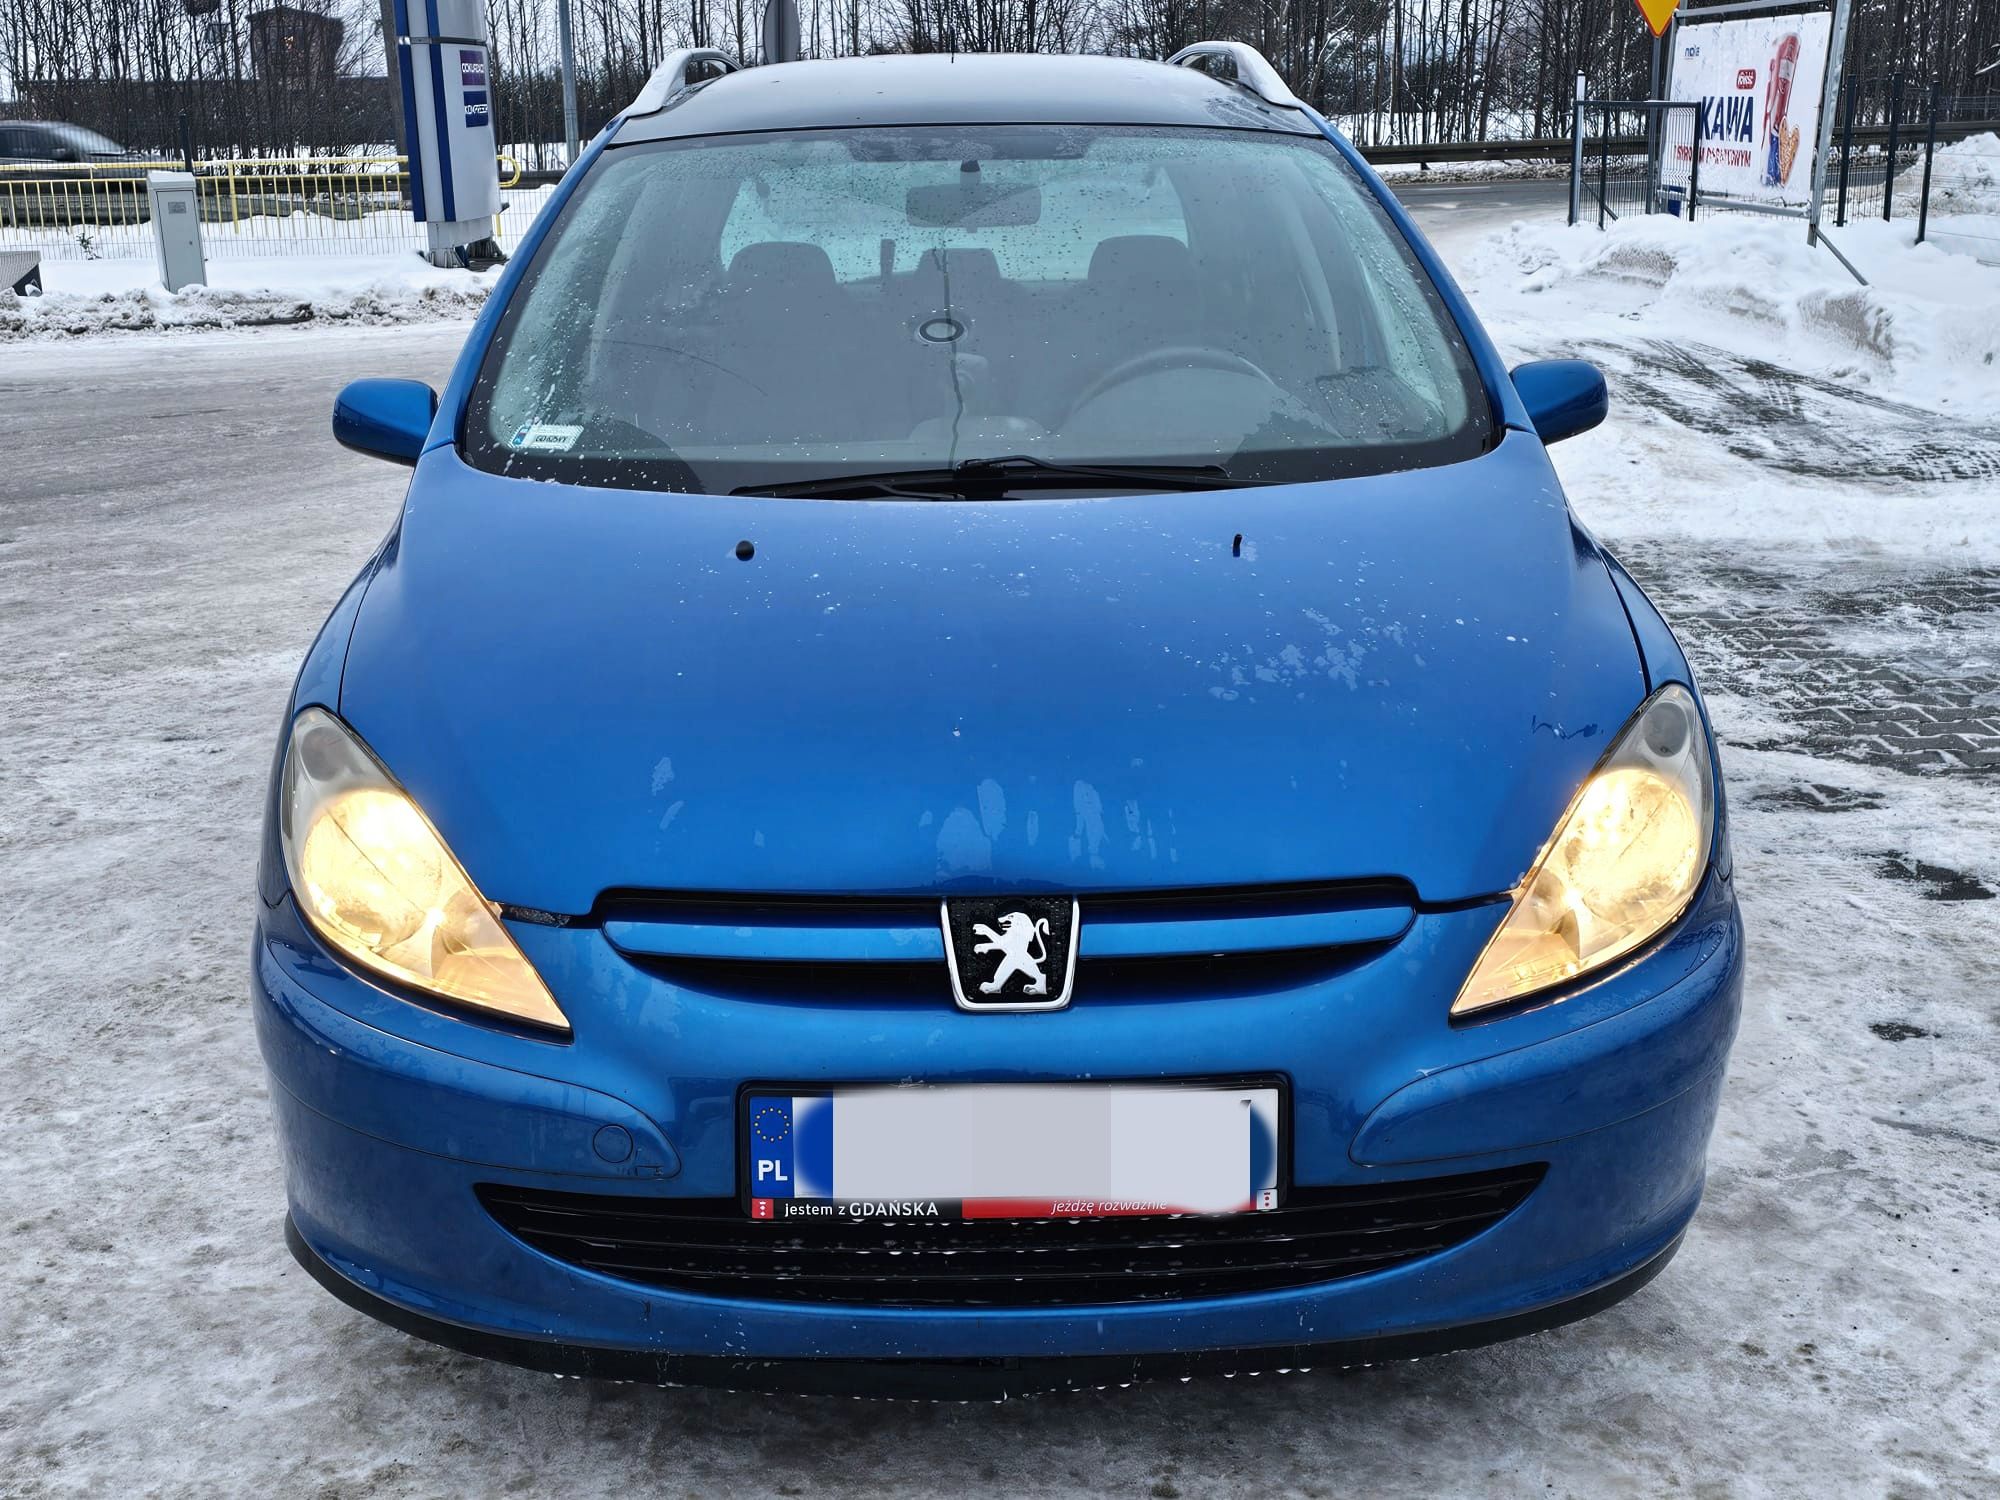 Peugeot 307 1.6 benzyna*7osobowy*Panorama*Klima*Elektryka*Alu*Okazja!